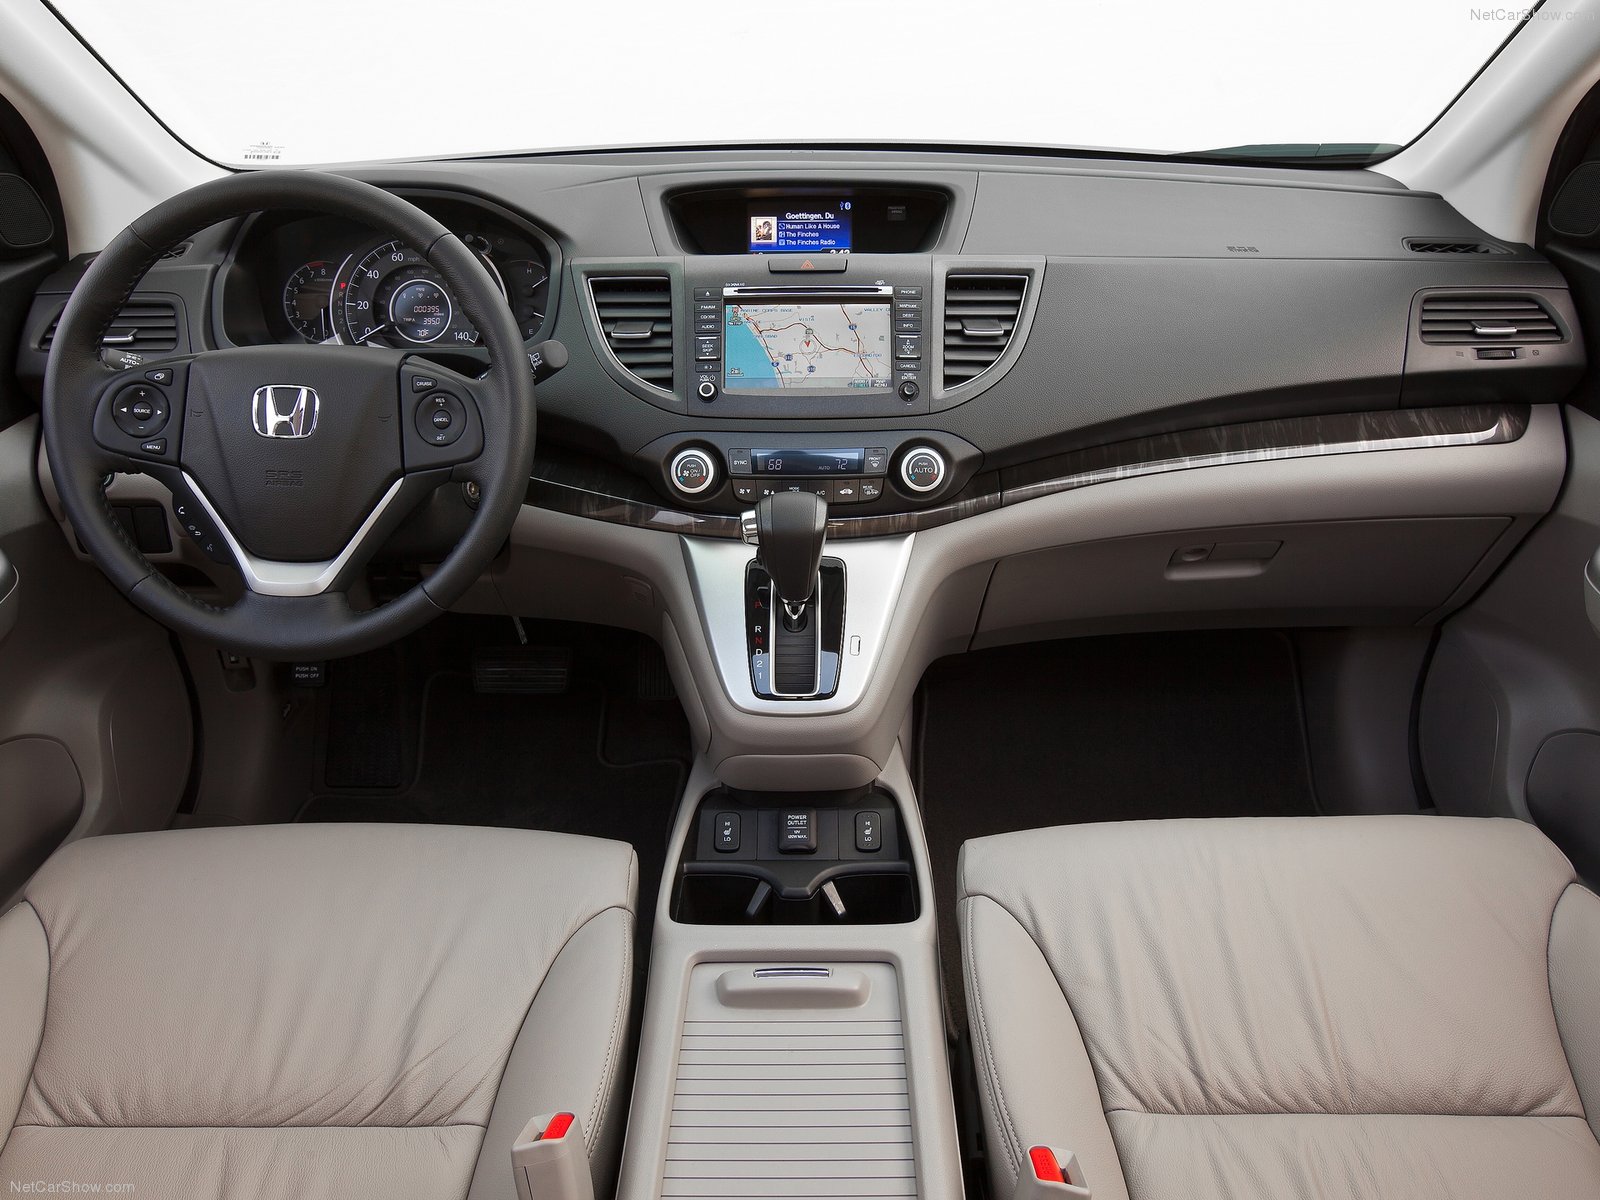 Honda CR-V IV 2012 - 2014 SUV 5 door #7